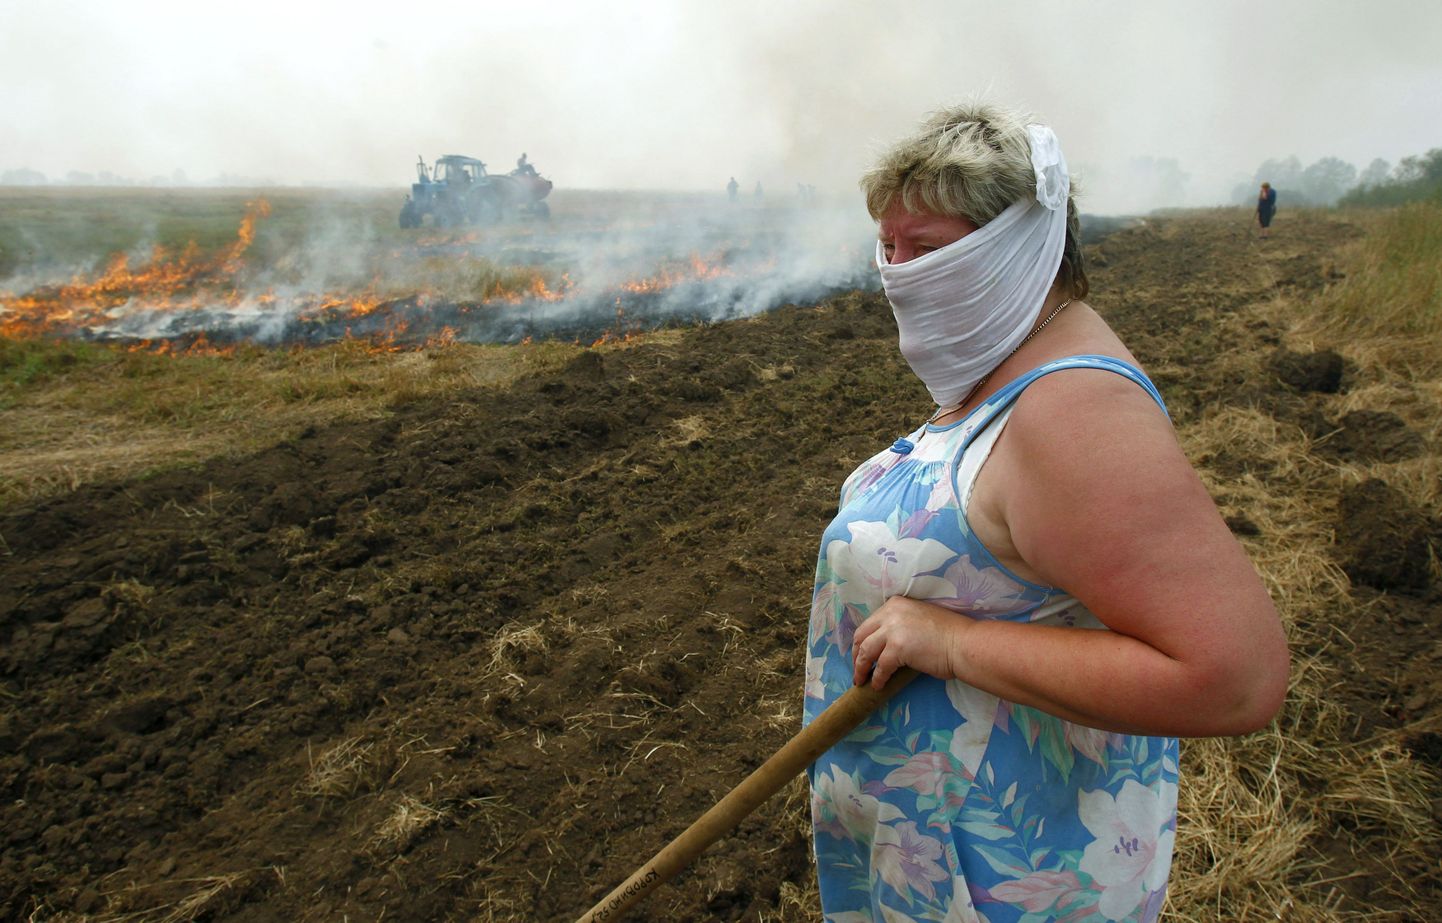 Korovino külaelanikud põletasid rohtu, et rajada uute põlengute leviku kaitsebarjääri. Küla jääb 90 kilomeetrit Moskvast kagusse.